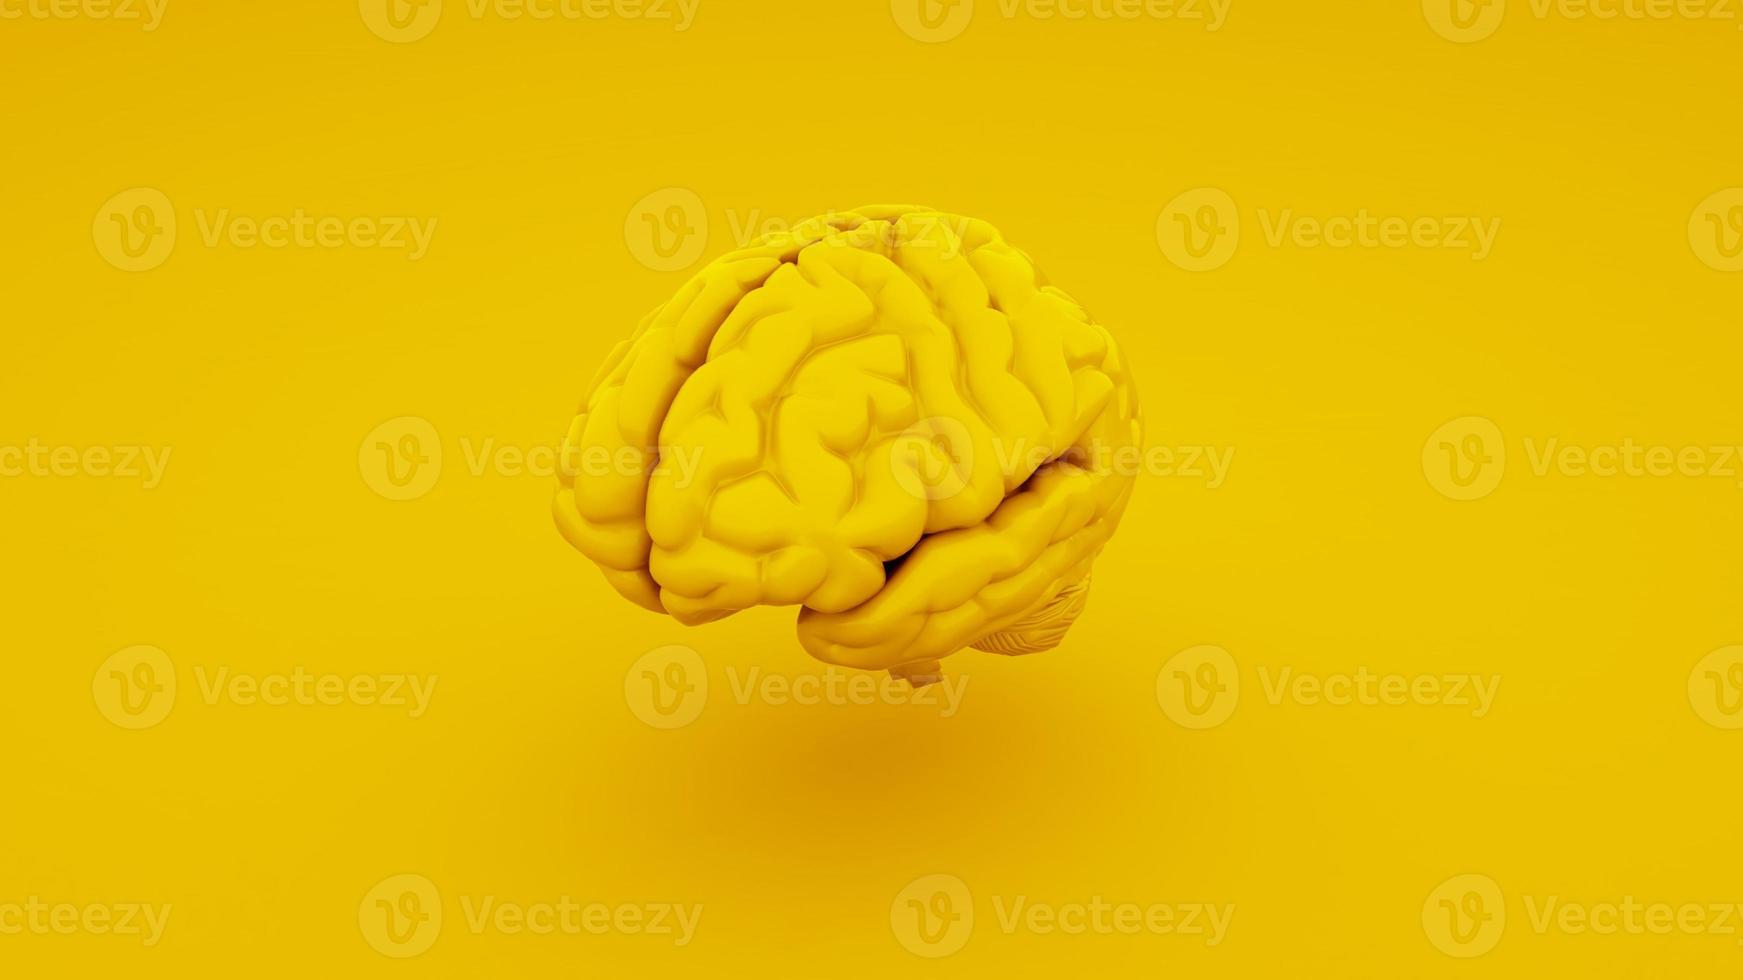 menschliches Gehirn, anatomisches Modell isoliert auf gelbem Hintergrund. 3D-Darstellung foto